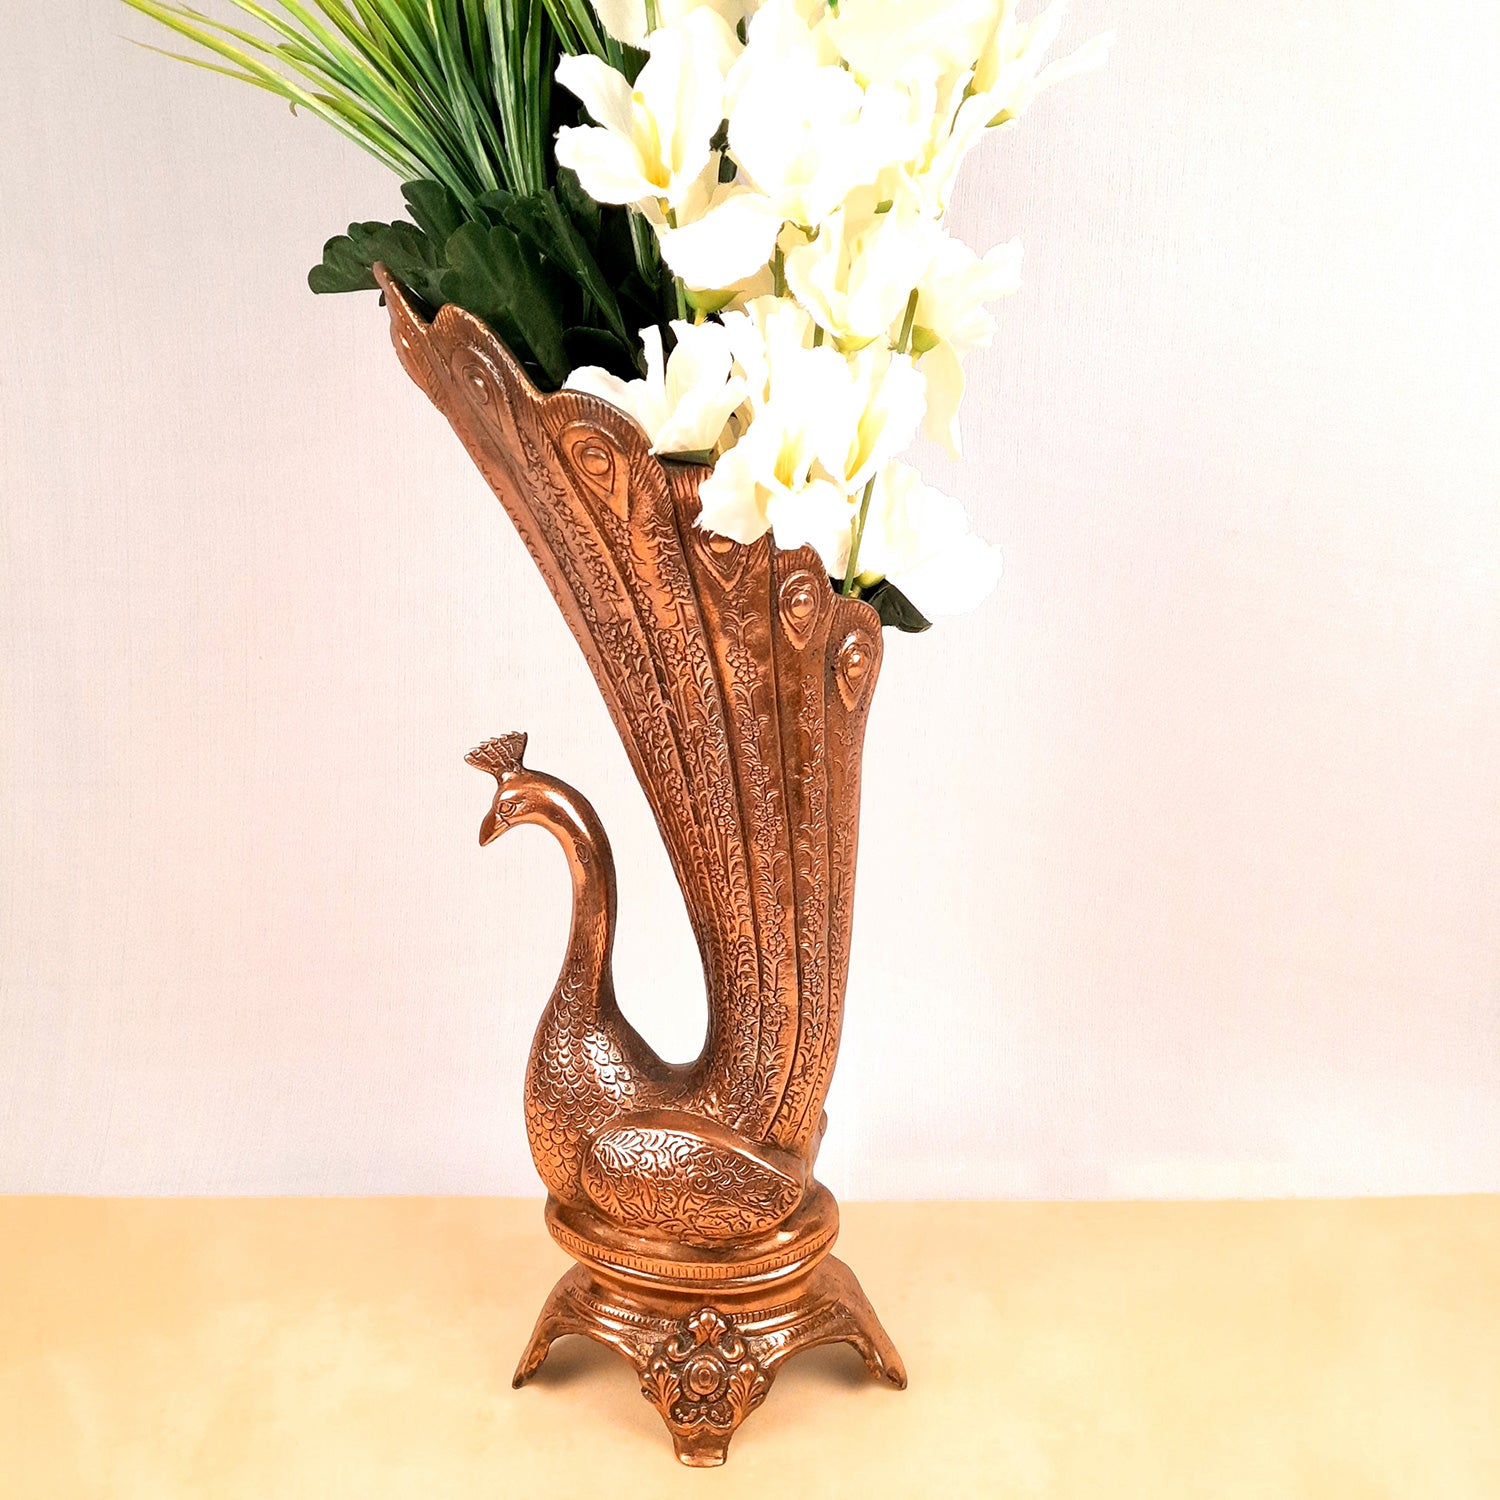 Flower Vase Big | Flower Pot for Corners - Metal With Peacock Design | Floor Vase - For Home, Living Room, Entrance, Office & Hall Decoration | House Warming & Festival Gift - 20 Inch - Apkamart